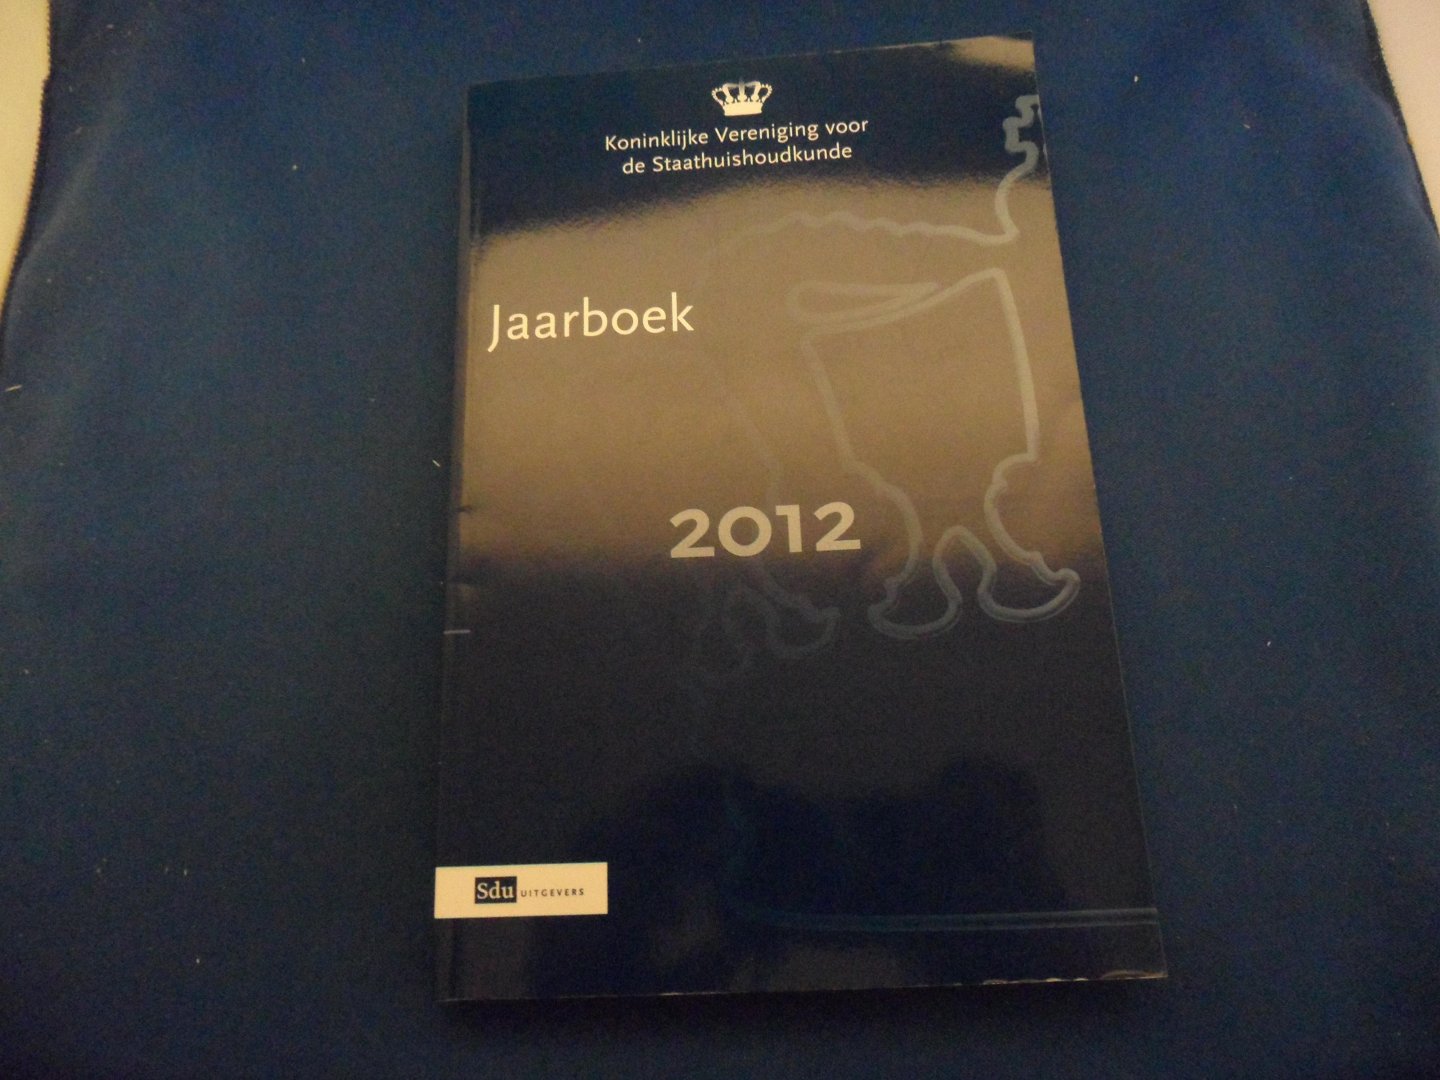  - Jaarboek 2012 Koninklijke Vereniging voor de Staathuishoudkunde